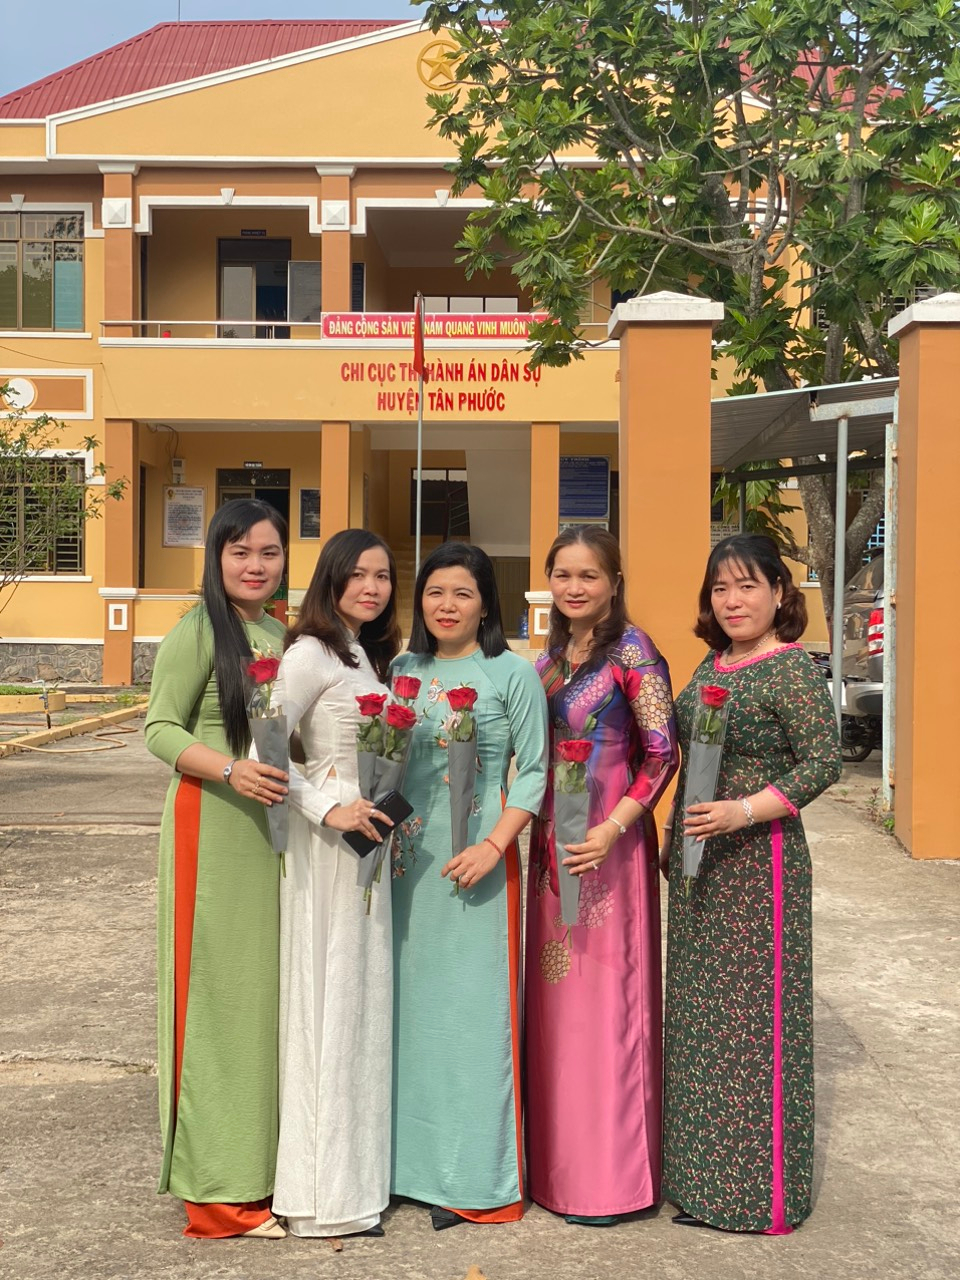 Chi cục THADS huyện Tân Phước tổ chức họp mặt Kỷ niệm 113 năm Ngày Quốc tế phụ nữ (8/3/1910 - 8/3/2023) và 1983 năm khởi nghĩa Hai Bà Trưng